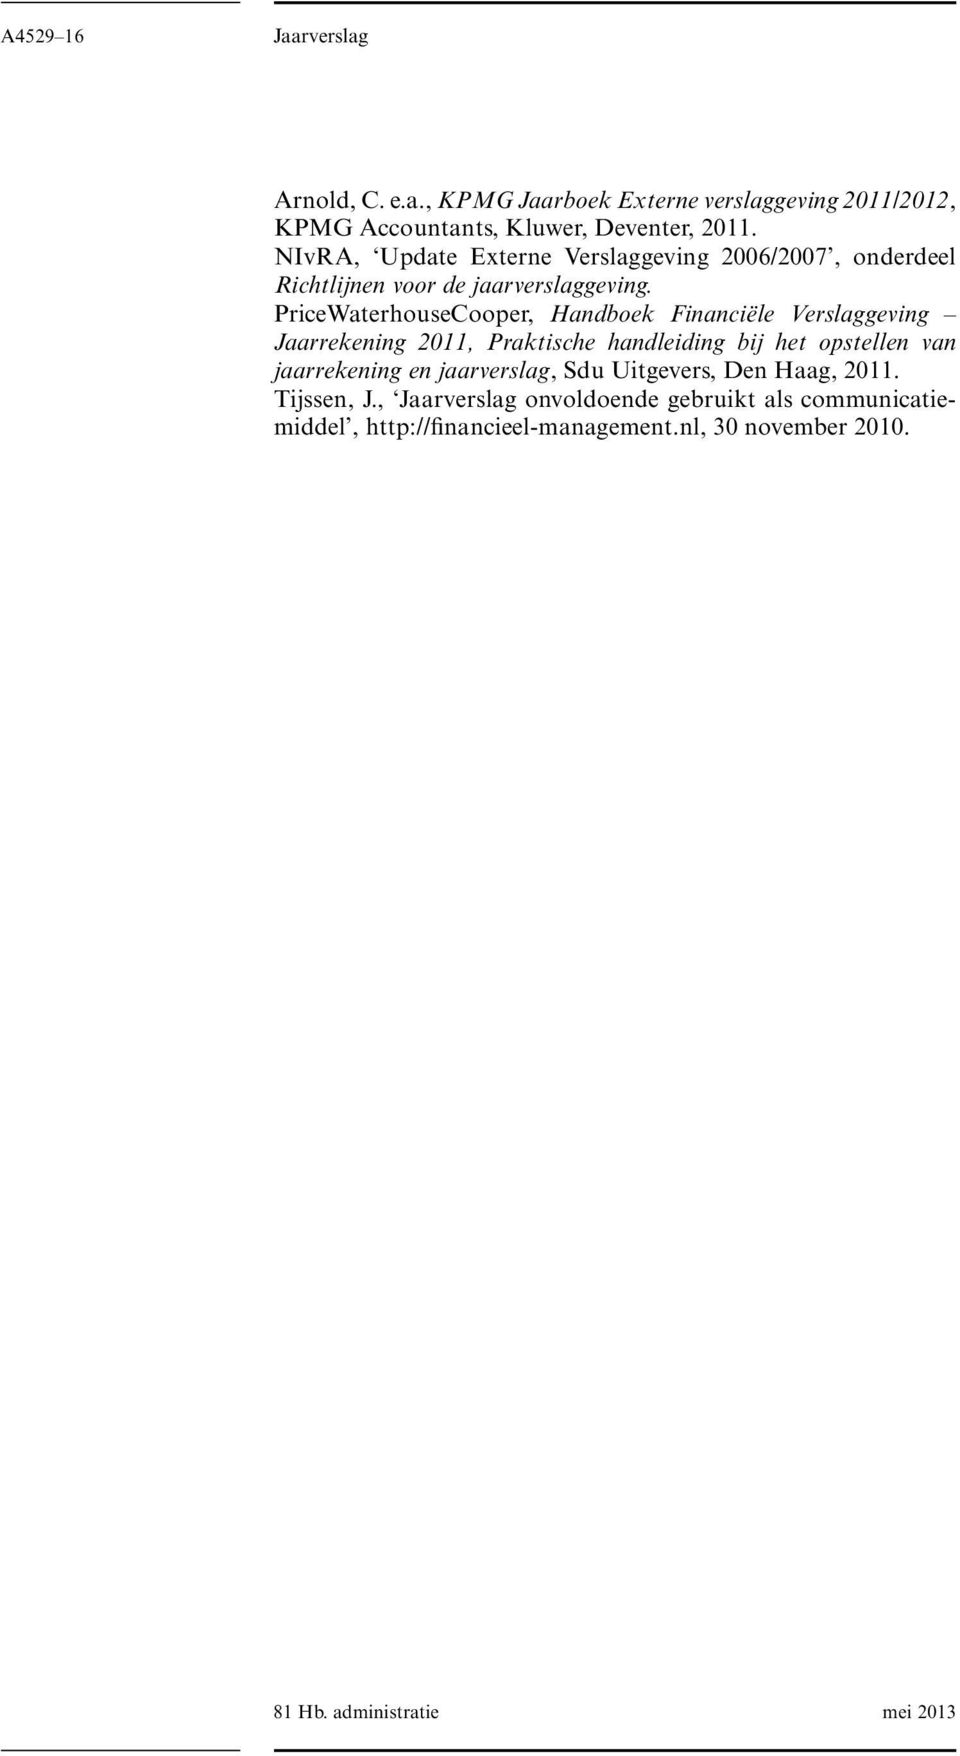 PriceWaterhouseCooper, Handboek Financiële Verslaggeving Jaarrekening 2011, Praktische handleiding bij het opstellen van